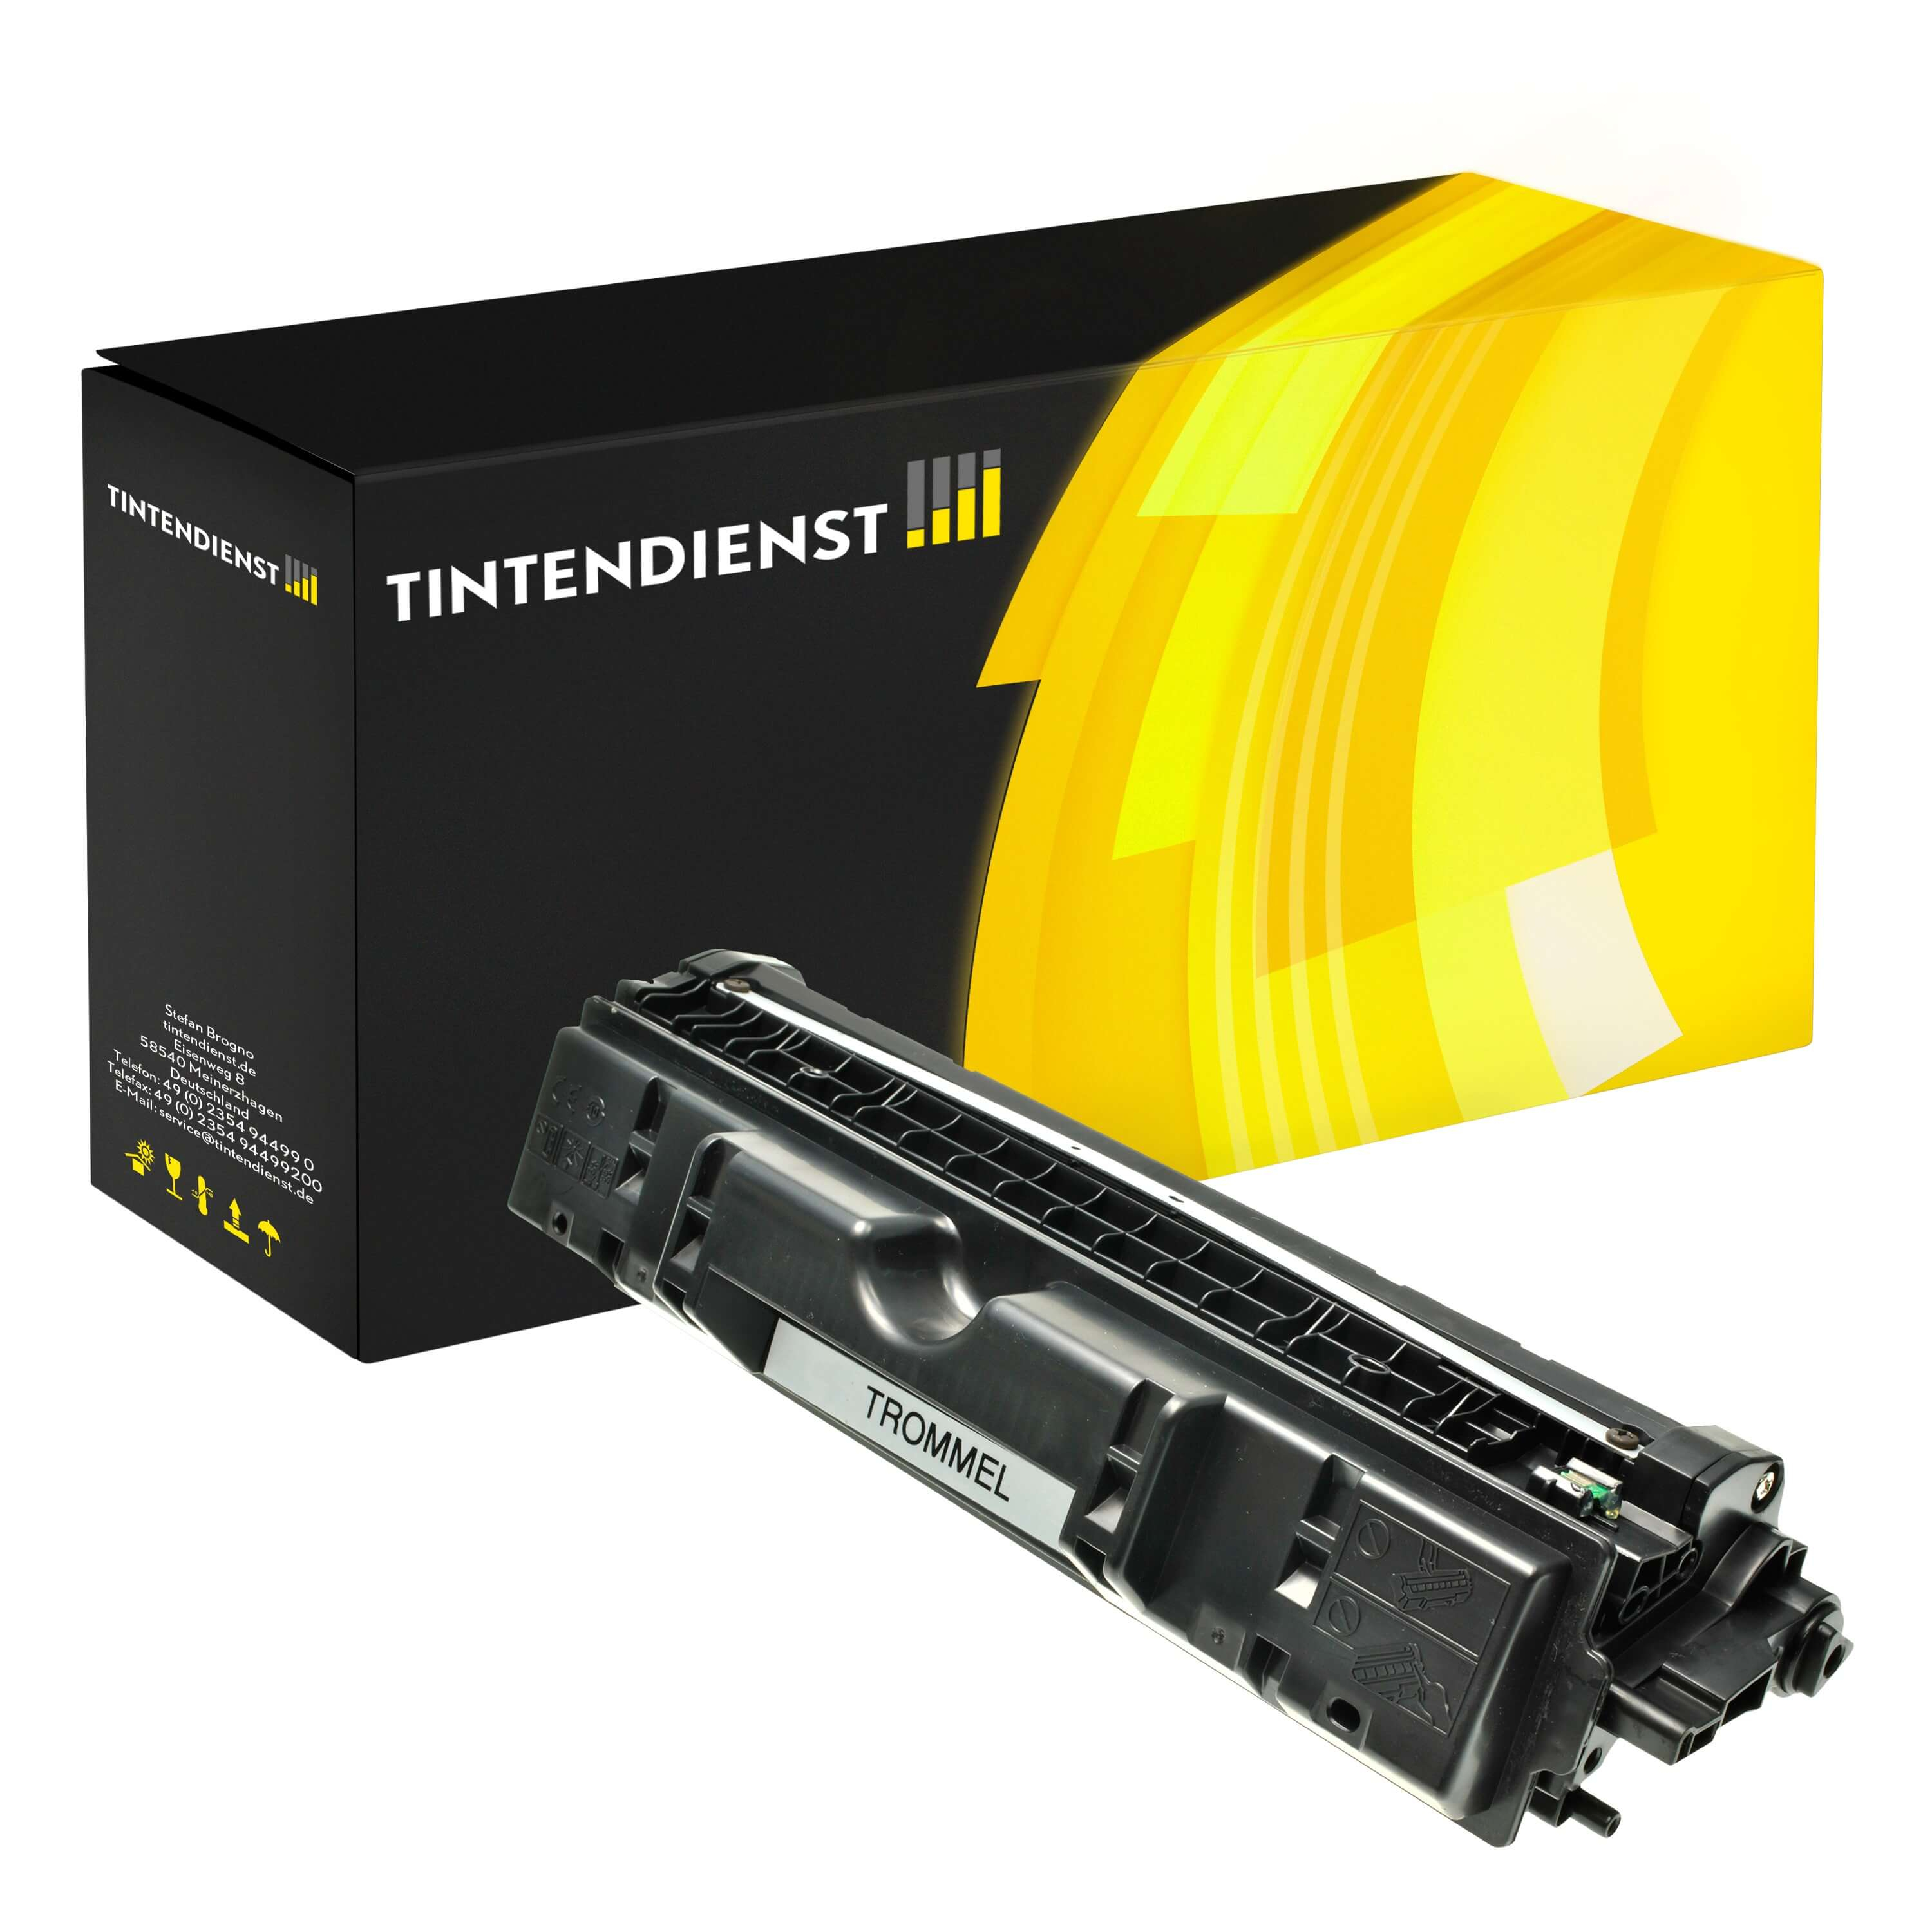 Trommel kompatibel für HP Color LaserJet Pro CP 1025 nw (CE314A / 126A)